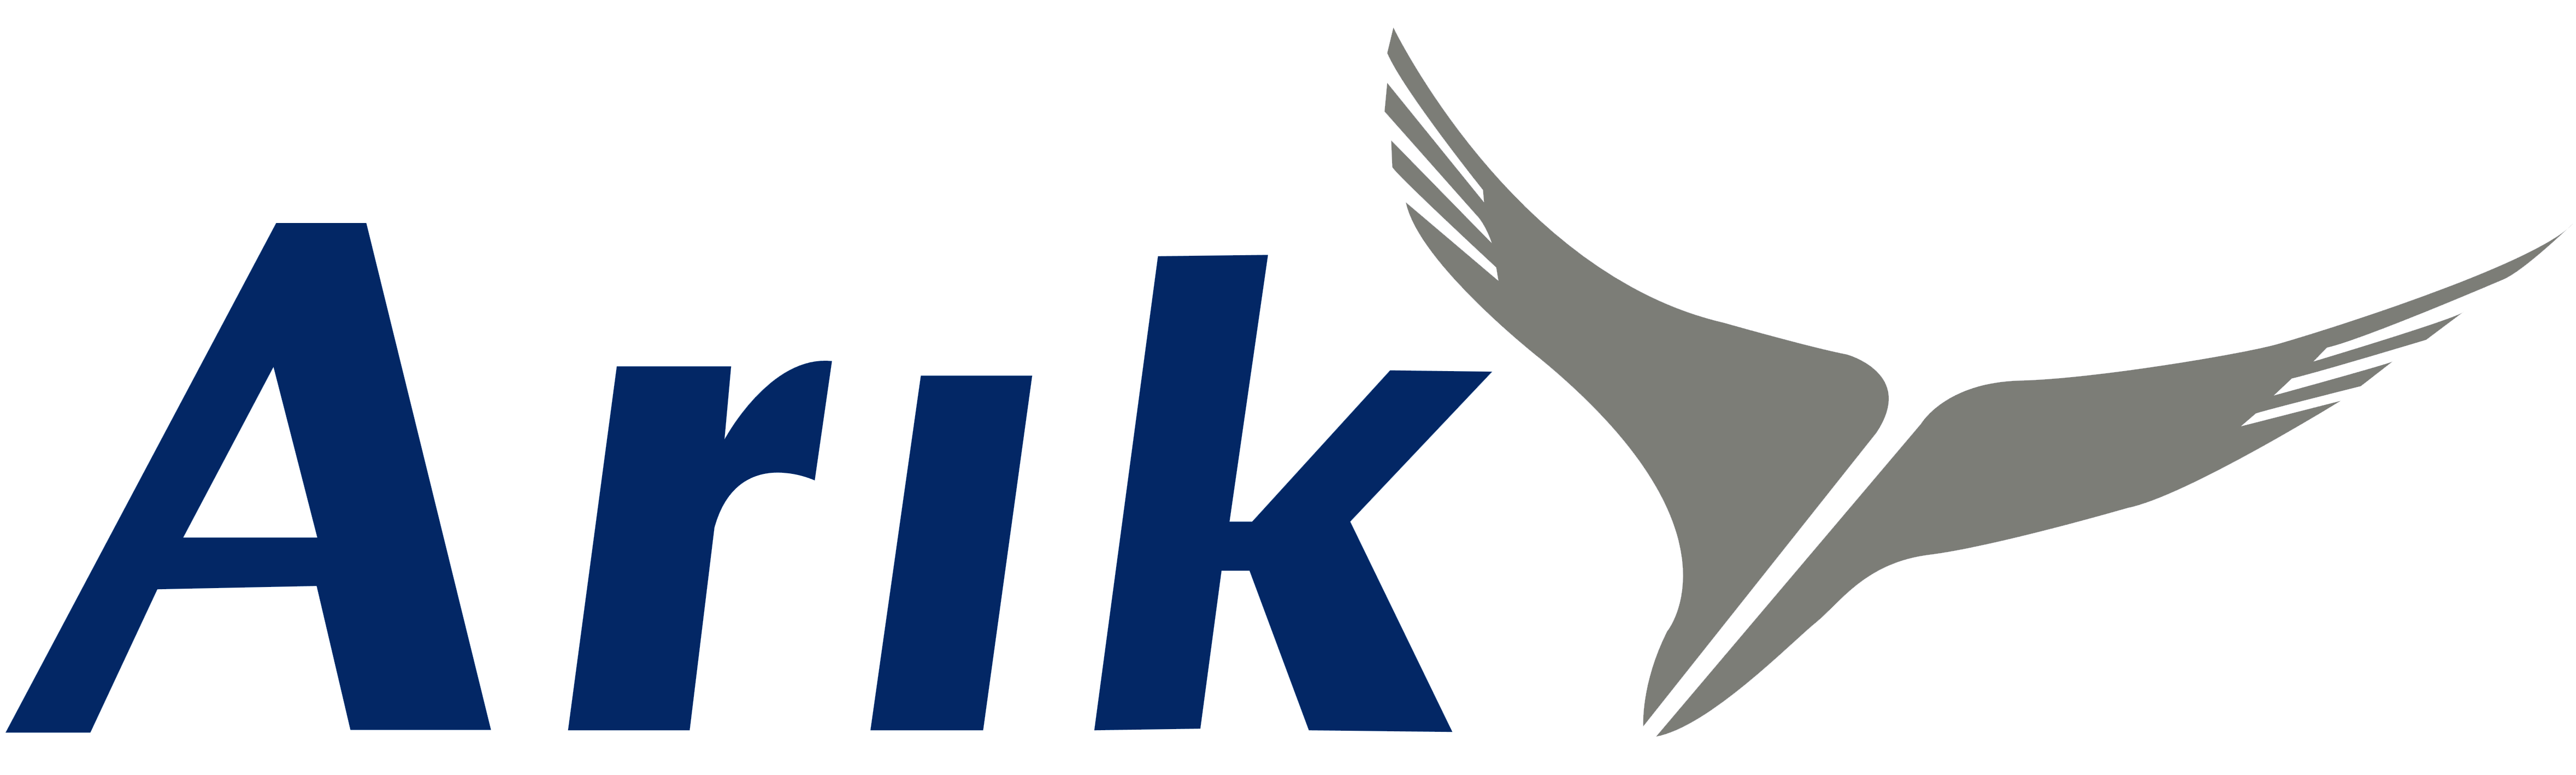 arik_air_logo_logotype